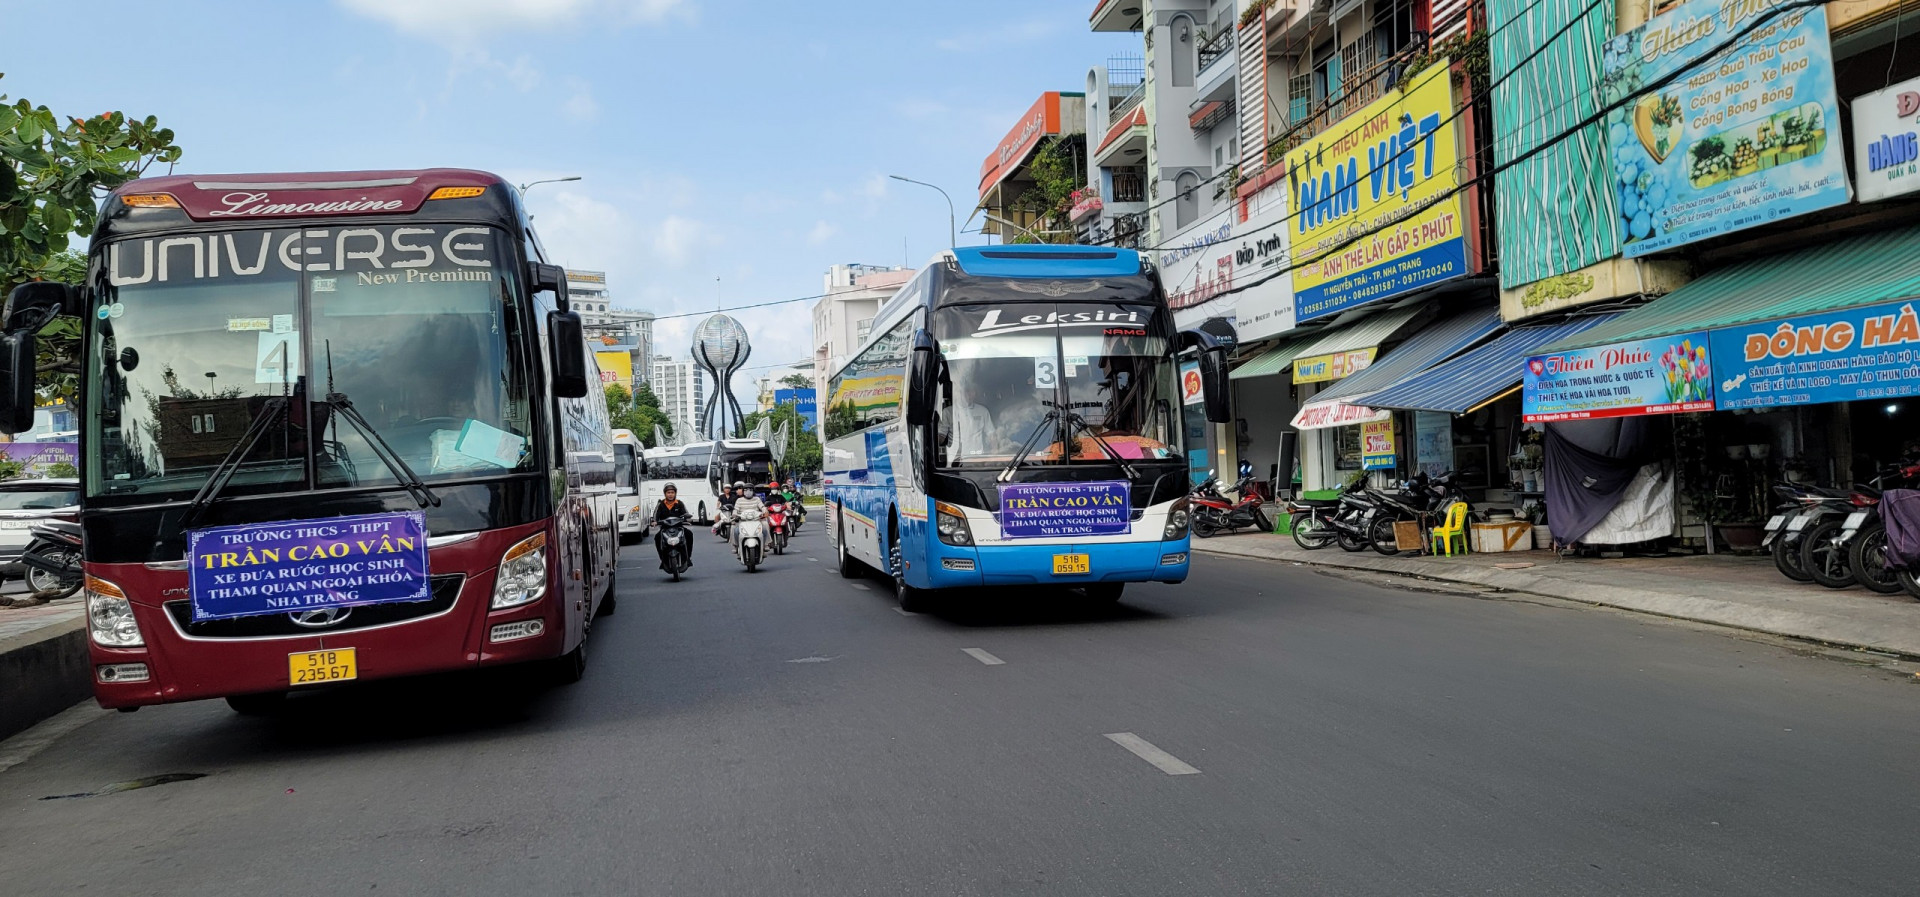 Xe từ 29 chỗ trở lên sẽ được vào trung tâm TP. Nha Trang giờ cao điểm nếu có biển hiệu xe du lịch.  Ảnh chụp trên đường Nguyễn Trãi (TP. Nha Trang).